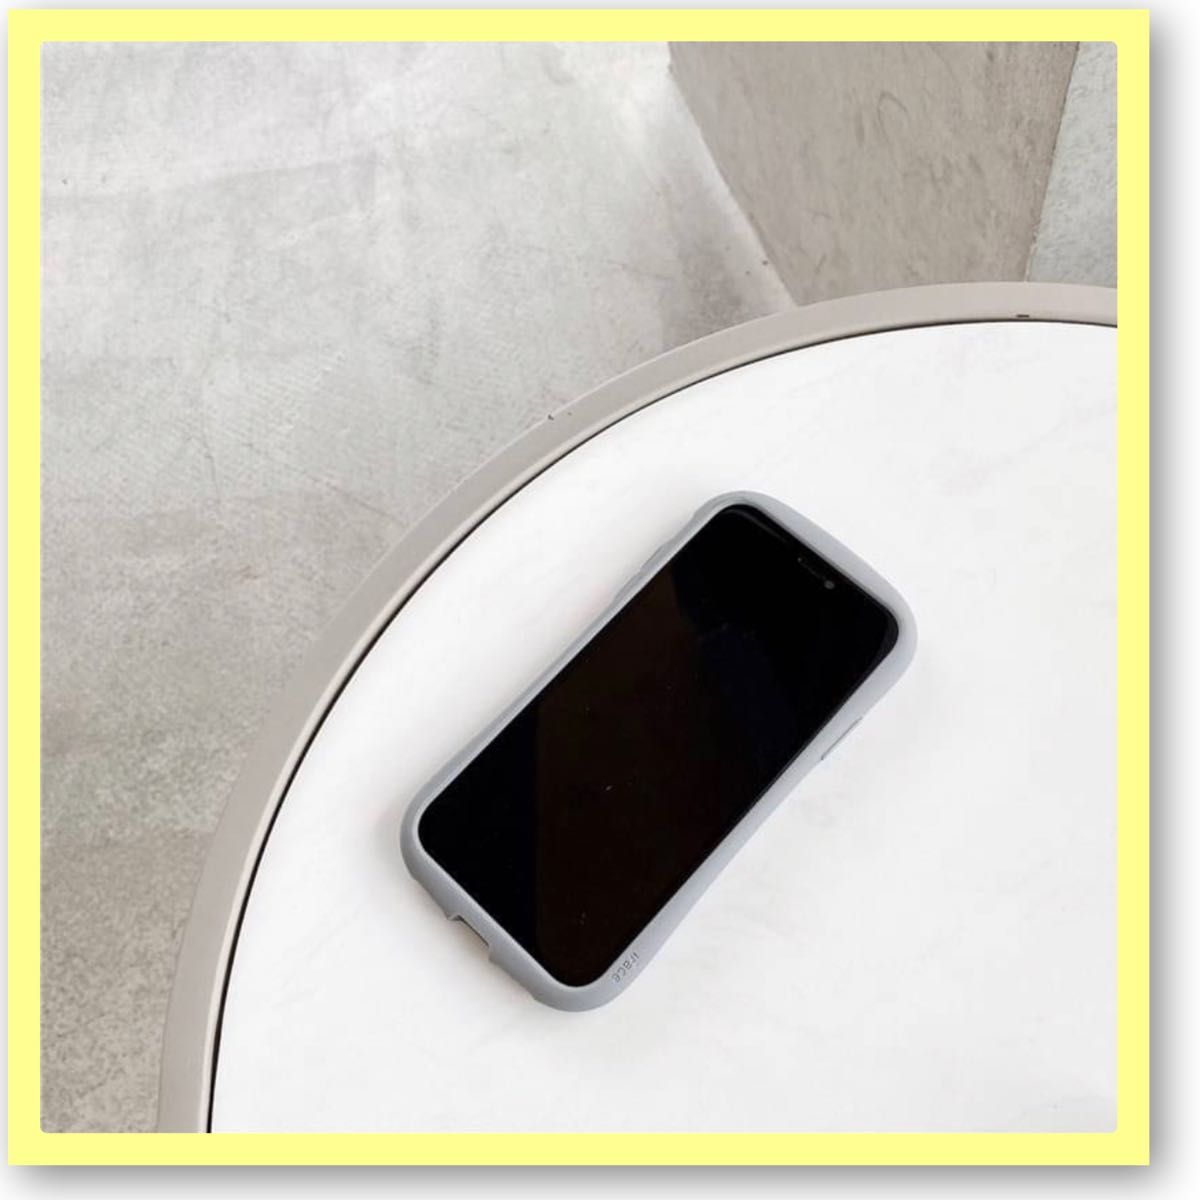 iPhone12 ケース シンプル ブラック クリア 韓国 カバー iFace型 スマホケース アイフォンケース